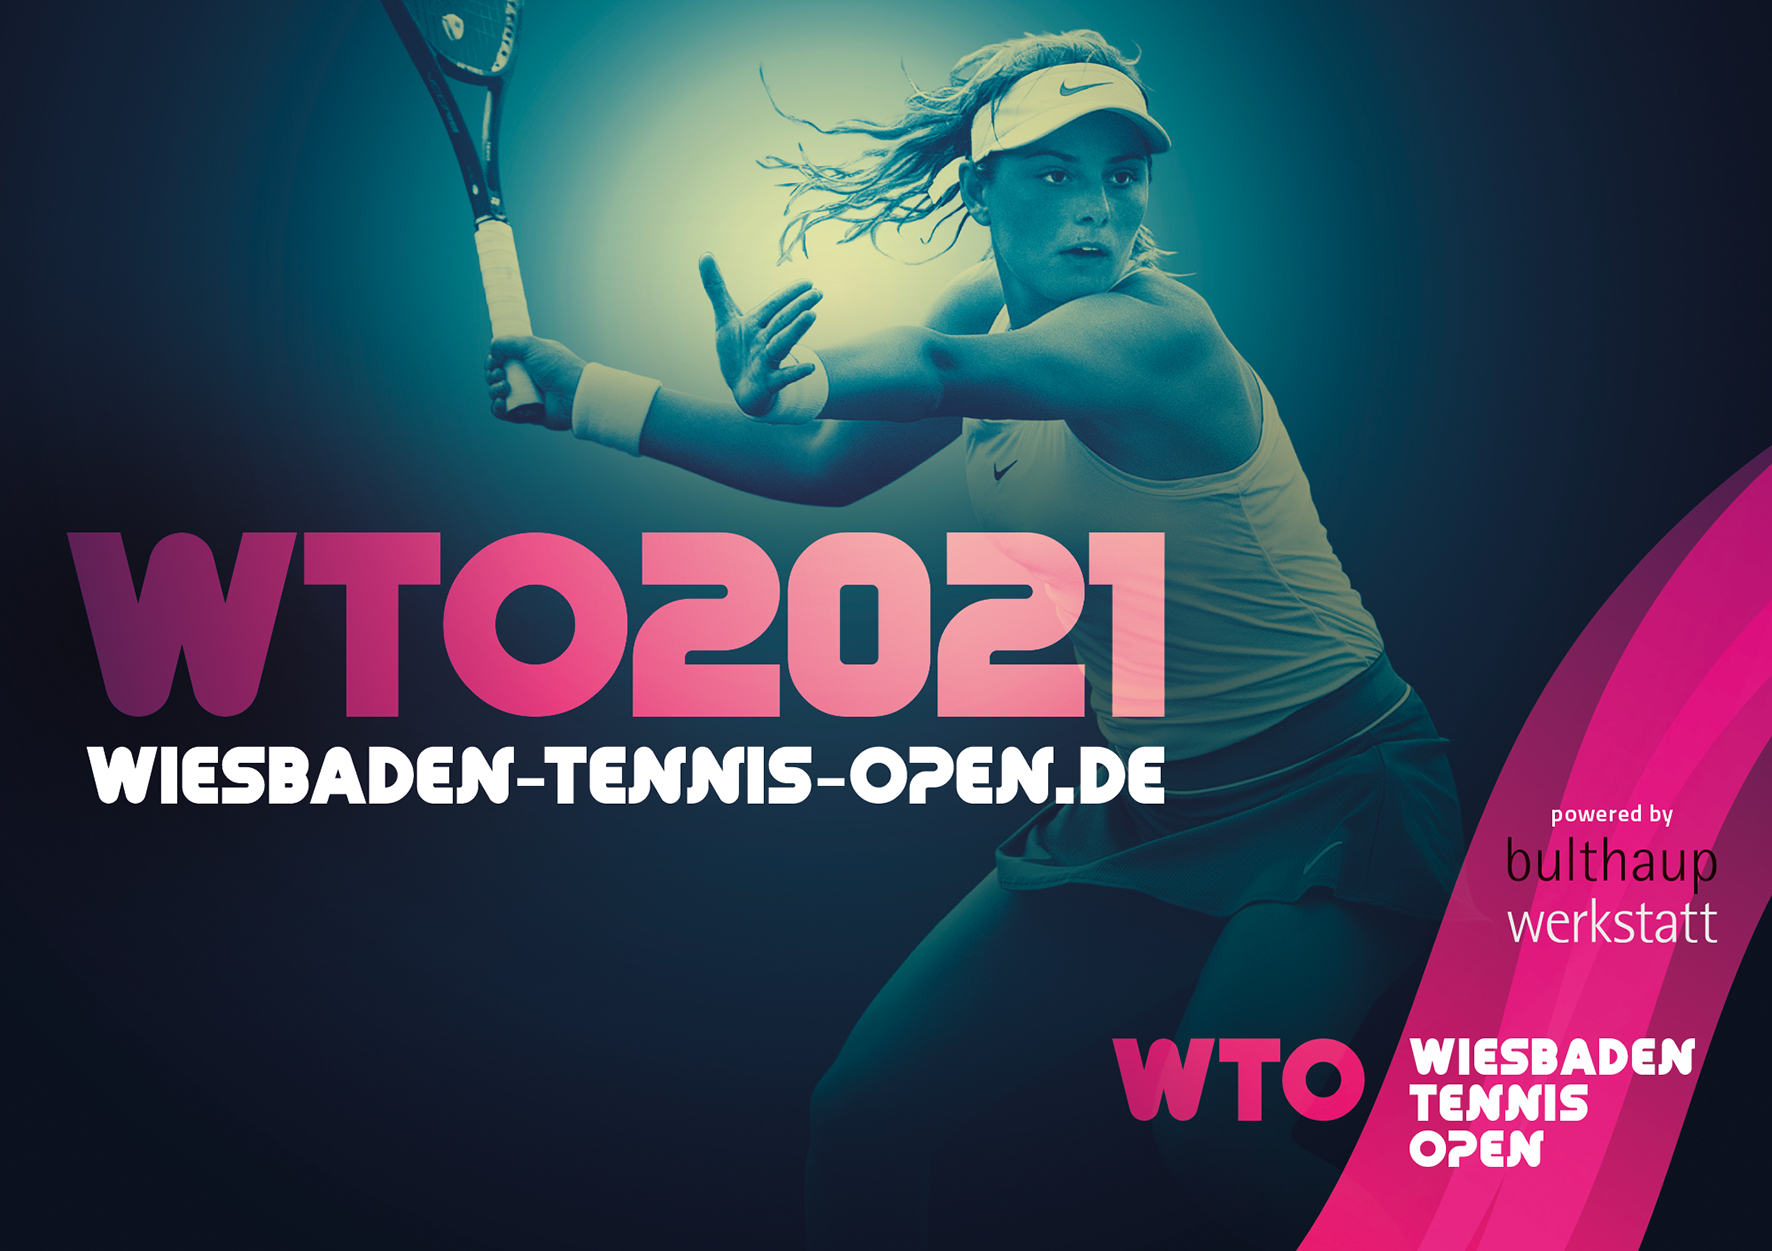 Wiesbaden Tennis Open 2021 Tennis live erleben vom 20